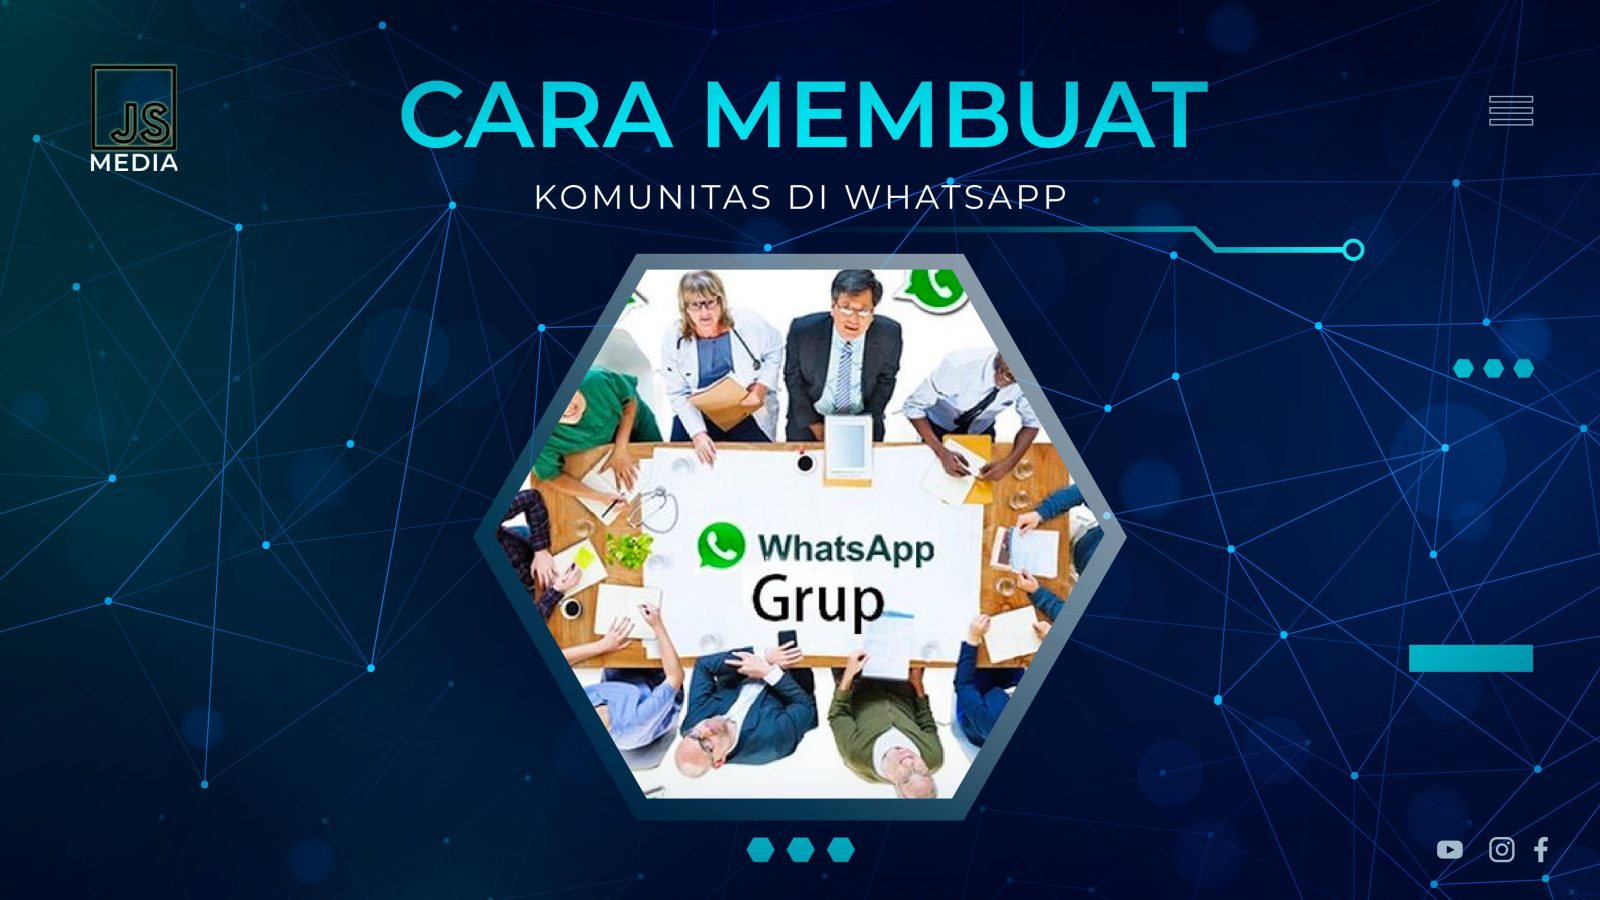 Cara Membuat Komunitas di Whatsapp